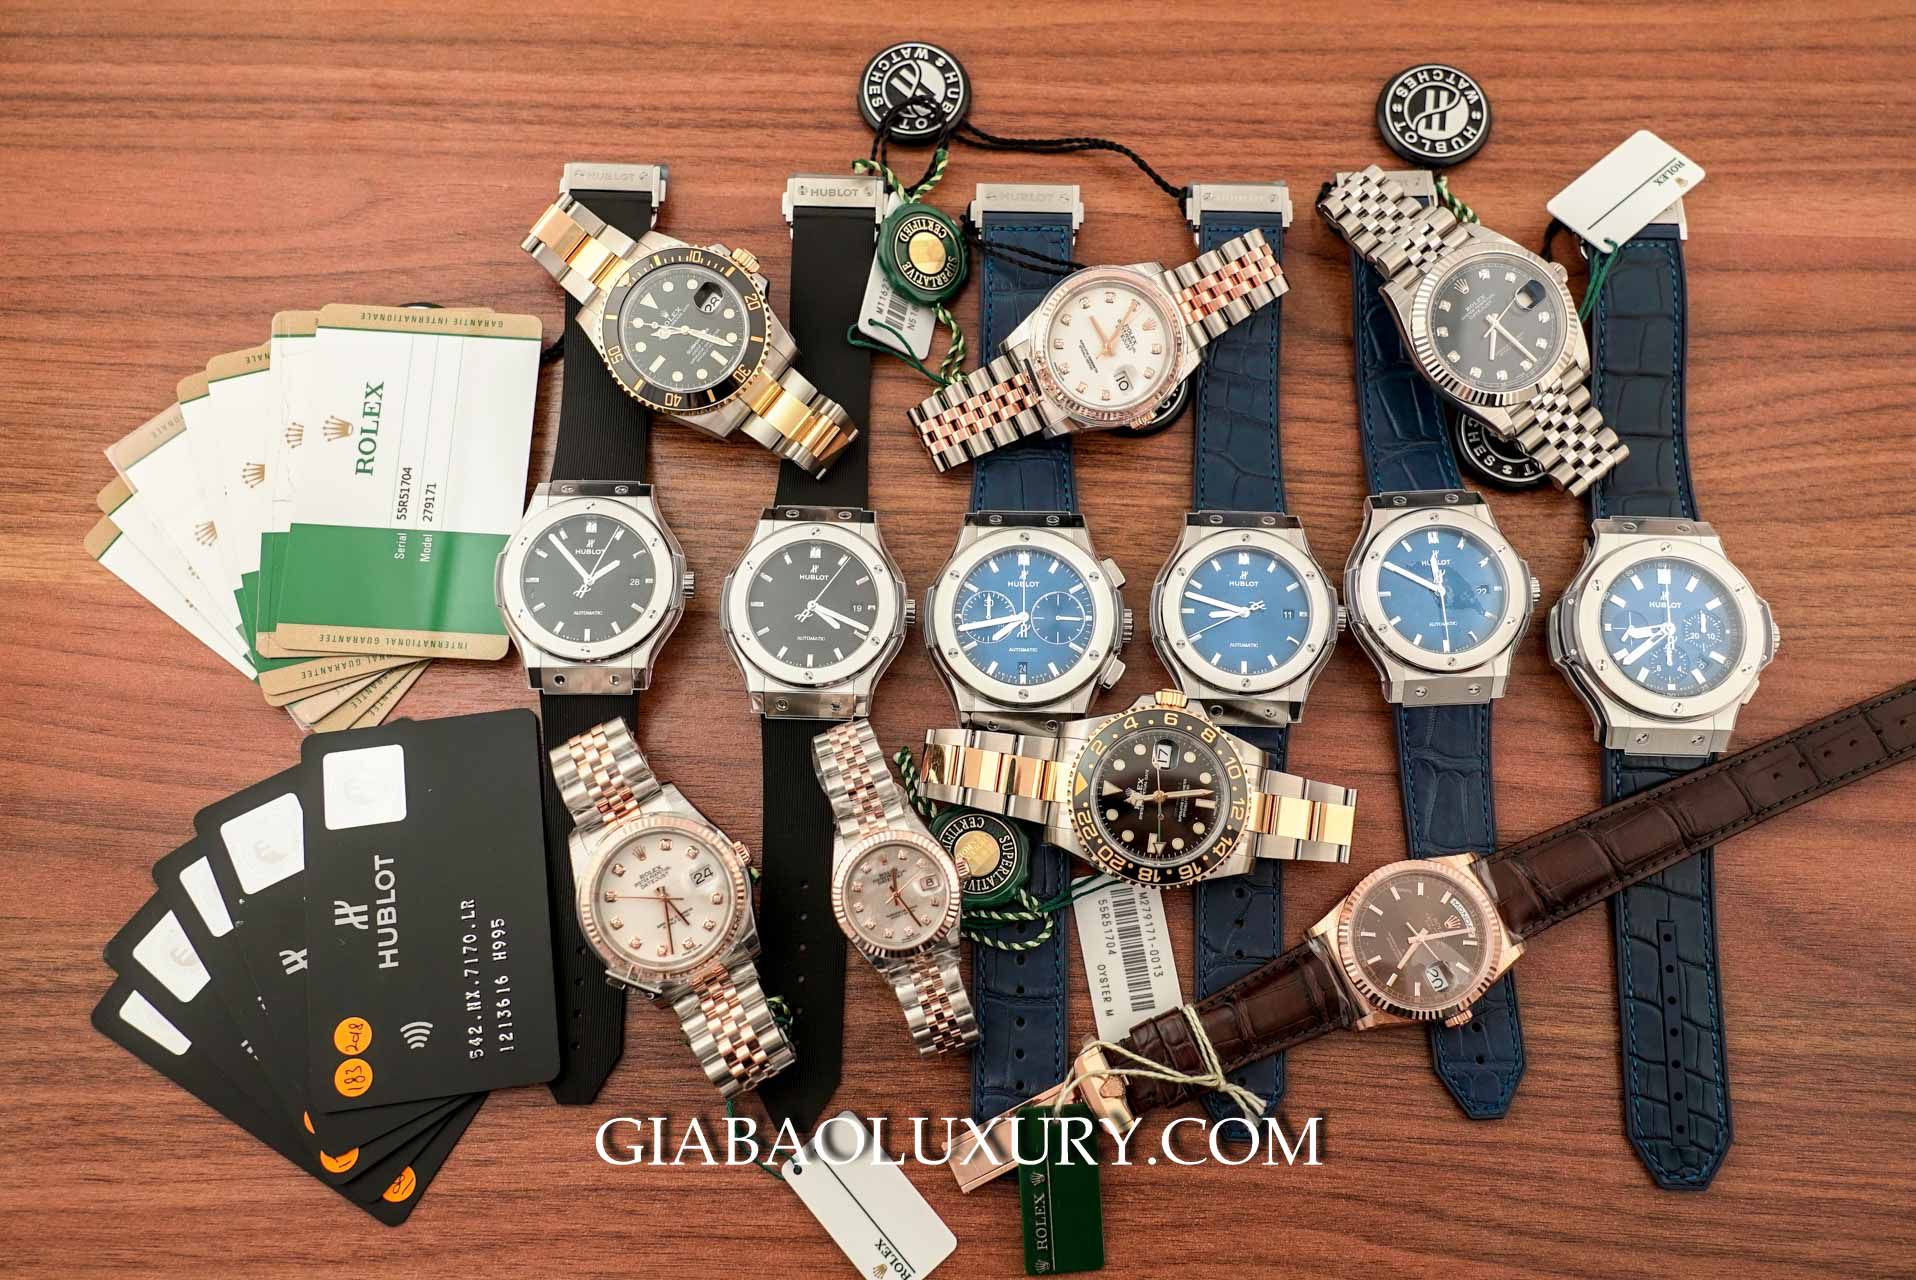 Gia Bảo Luxury cung cấp dịch vụ thu mua đồng hồ Hublot Classic Fusion nhanh chóng, chuyên nghiệp, giá tốt nhất thị trường 